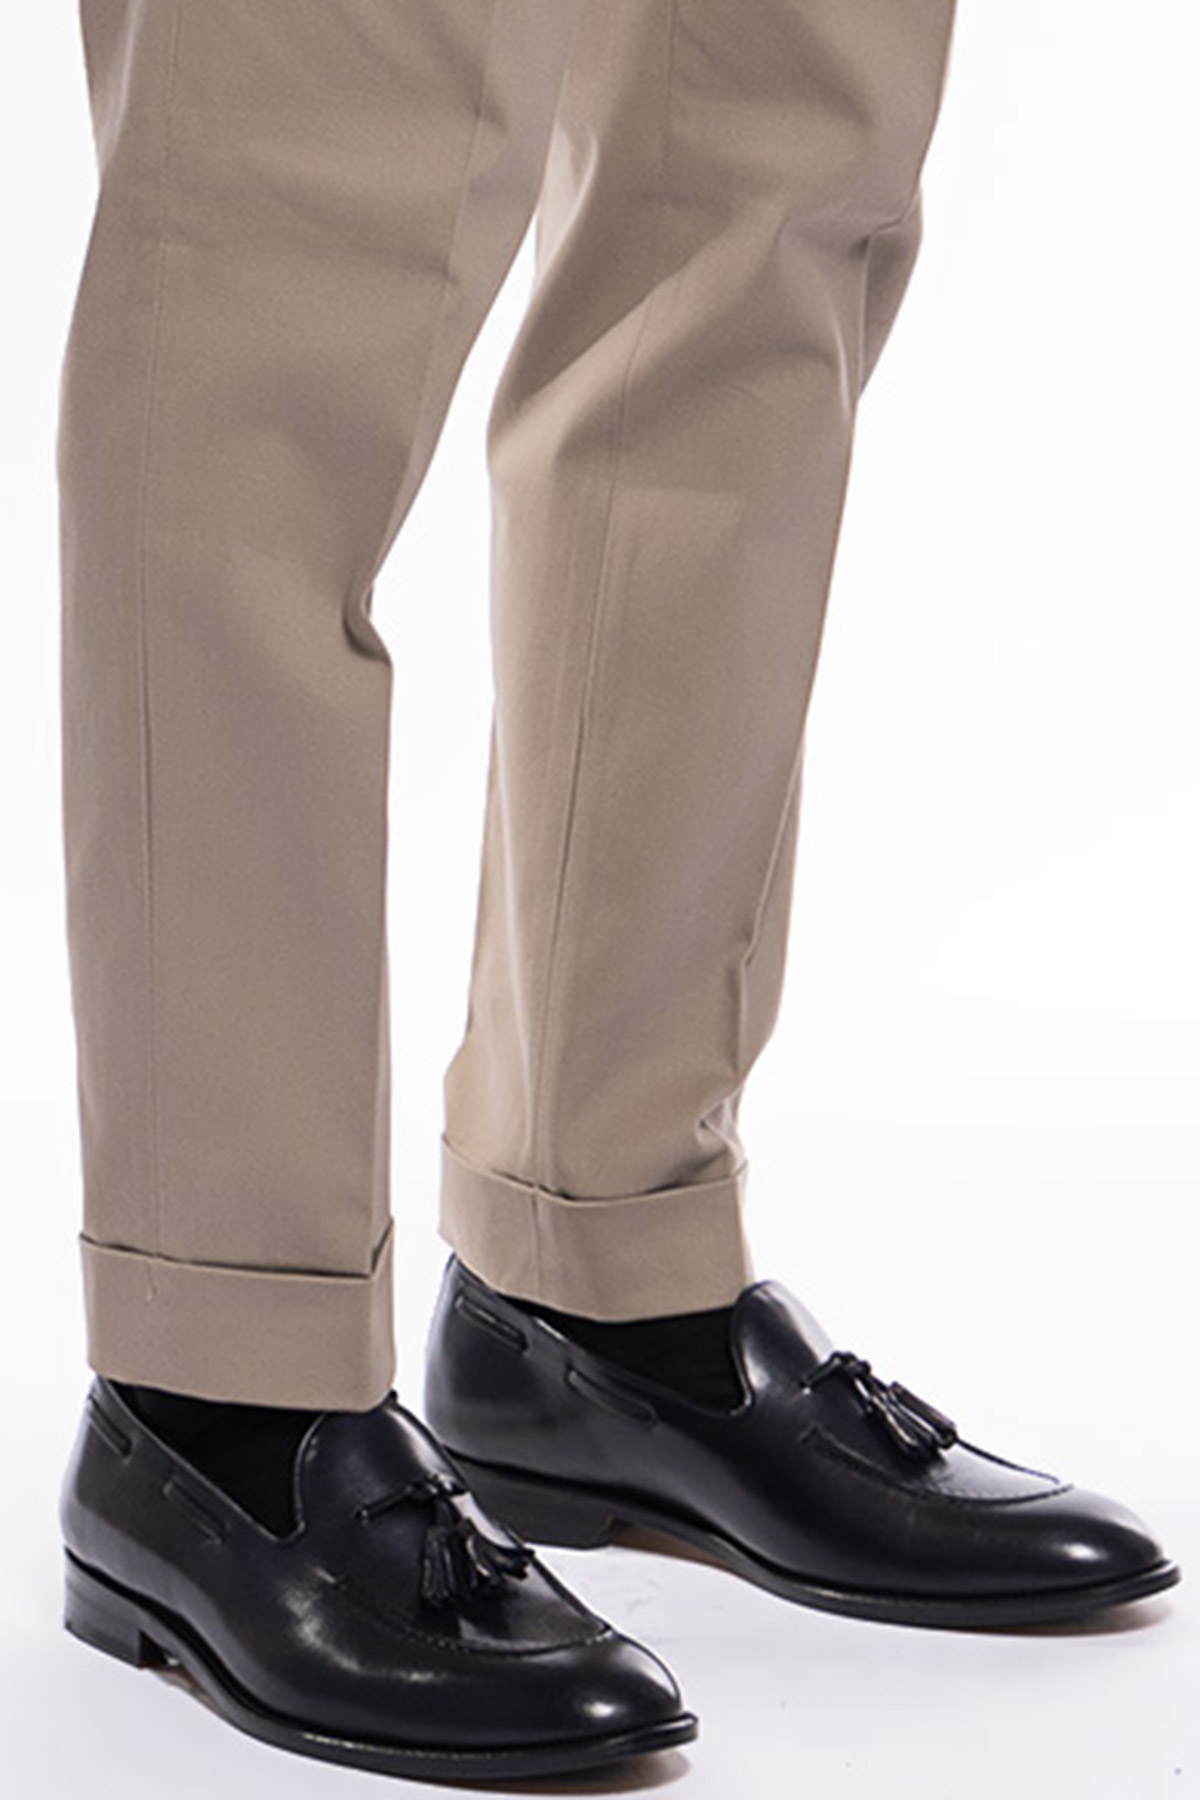 Pantalone uomo beige vita alta tasca america in cotone con doppia pinces e fibbie laterali